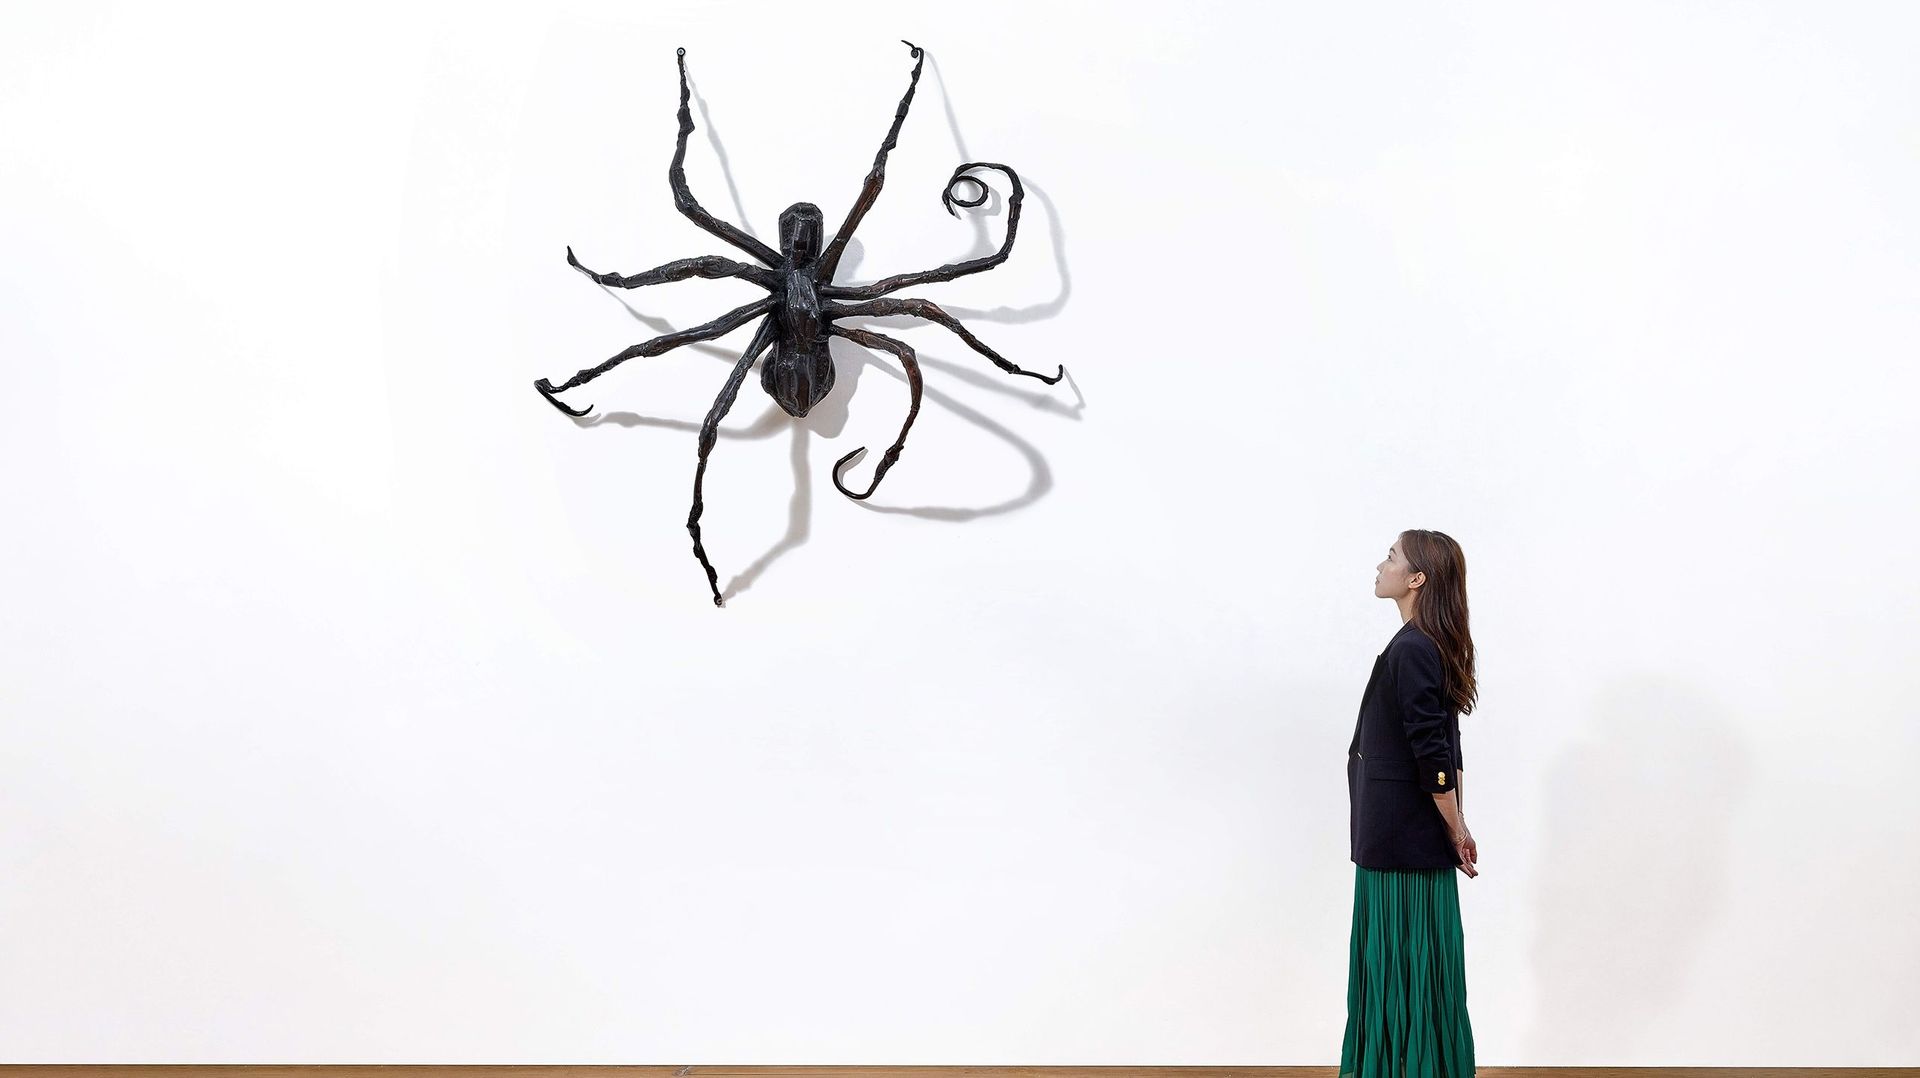 "Spider IV" de Louise Bourgeois pourrait être adjugée entre 120 et 150 millions de dollars hongkongais, selon les estimations de Sotheby’s.